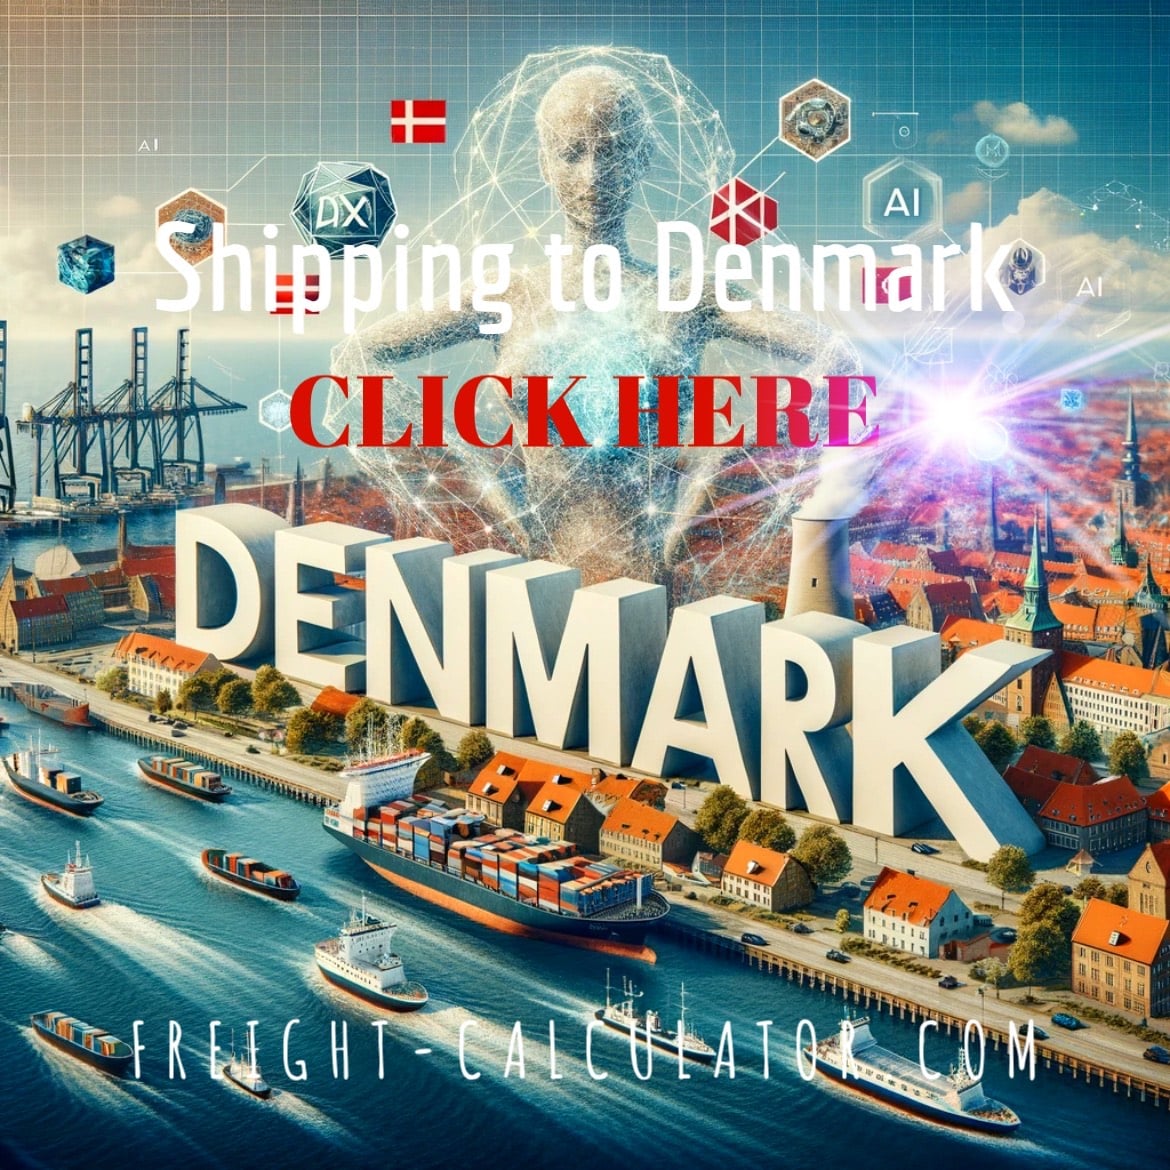 Shipping to Denmark